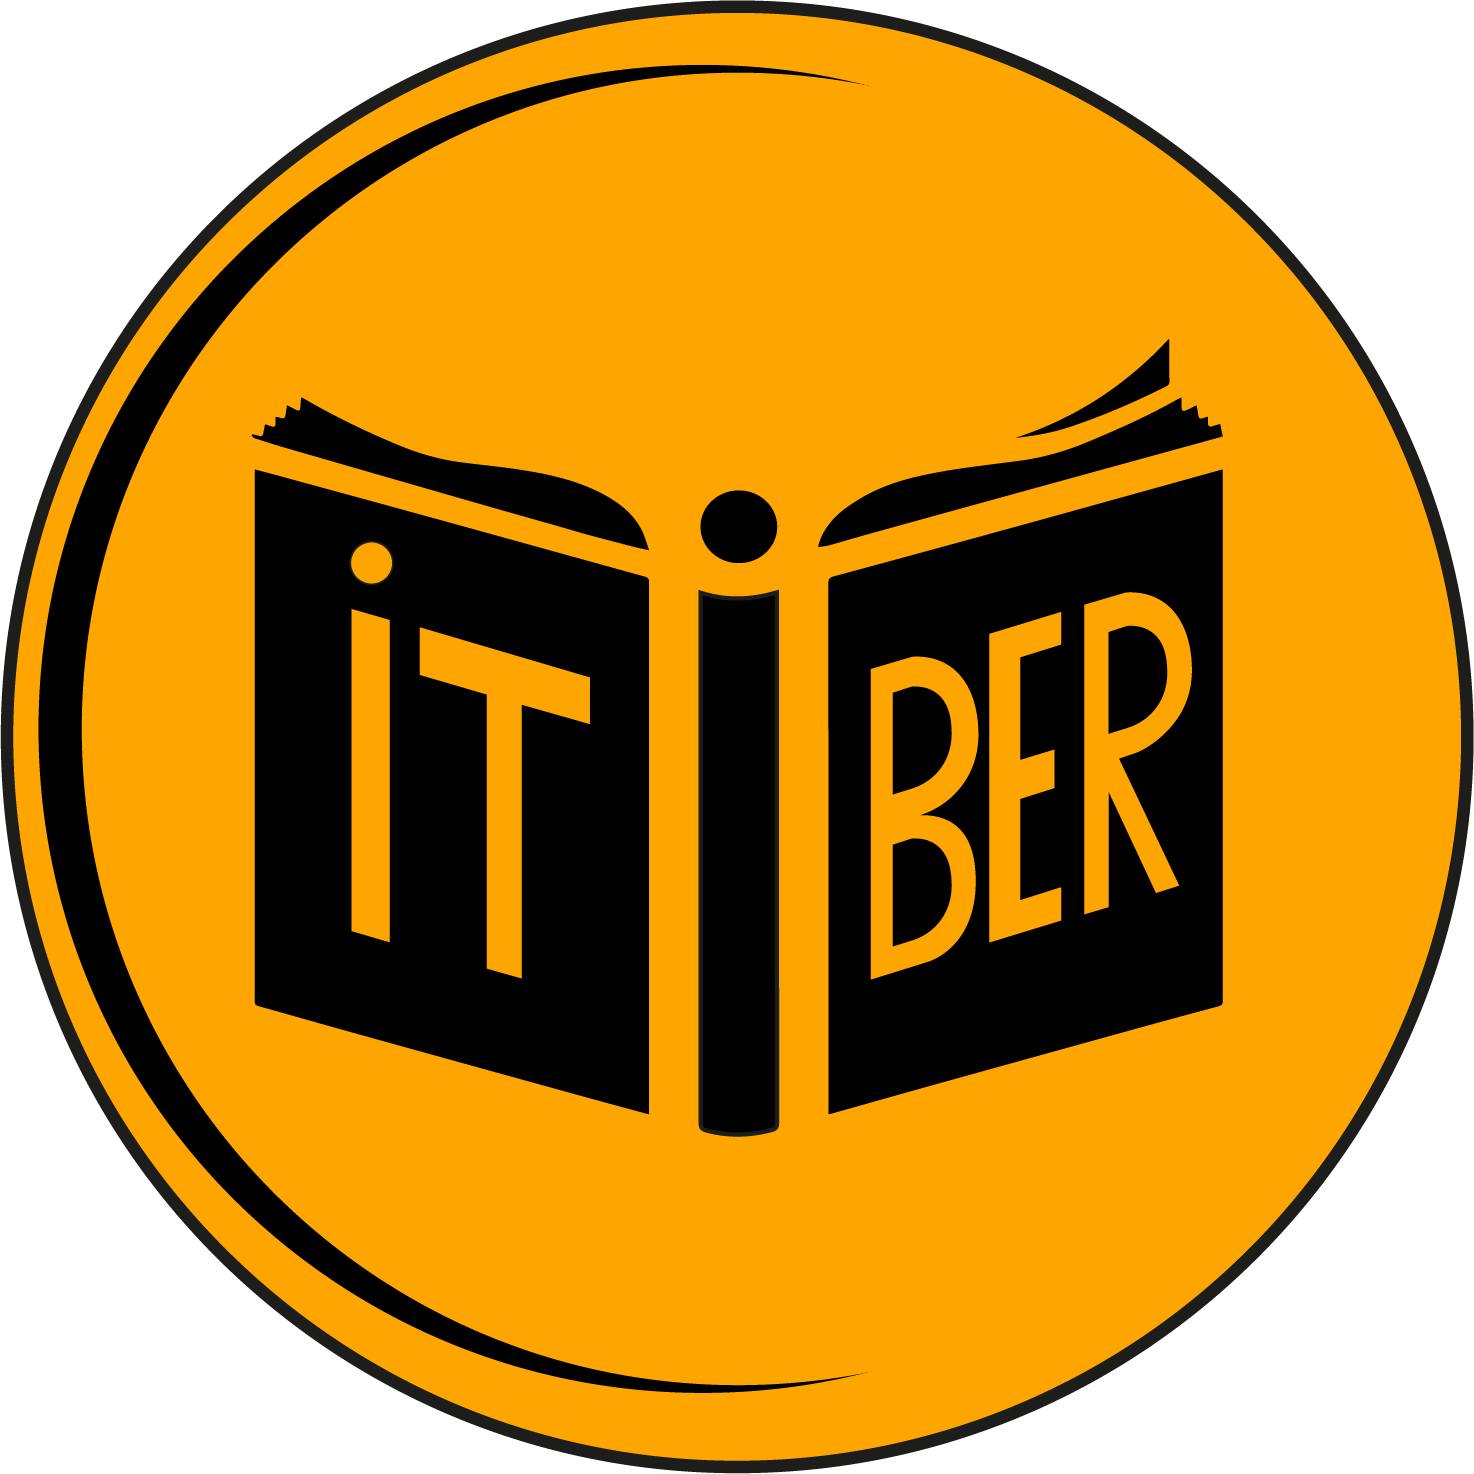 Itiber